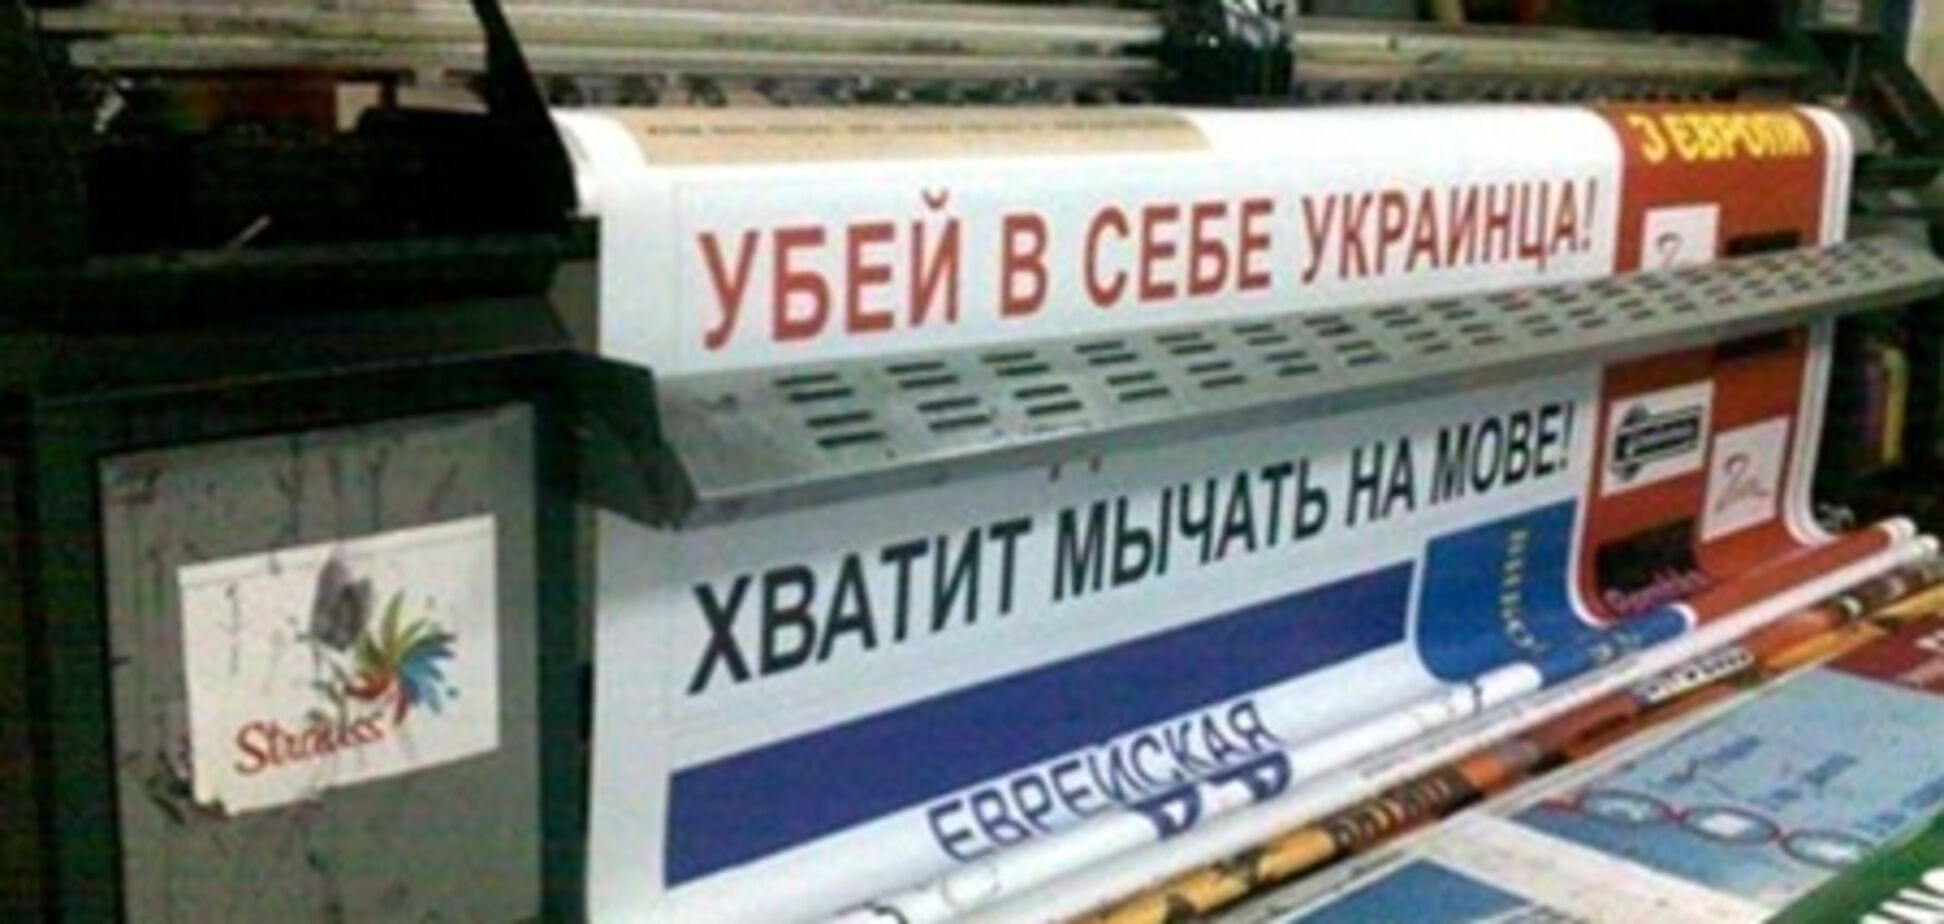 В Крыму разгорелся скандал вокруг постеров 'Хватит мычать на мове!'. Видео